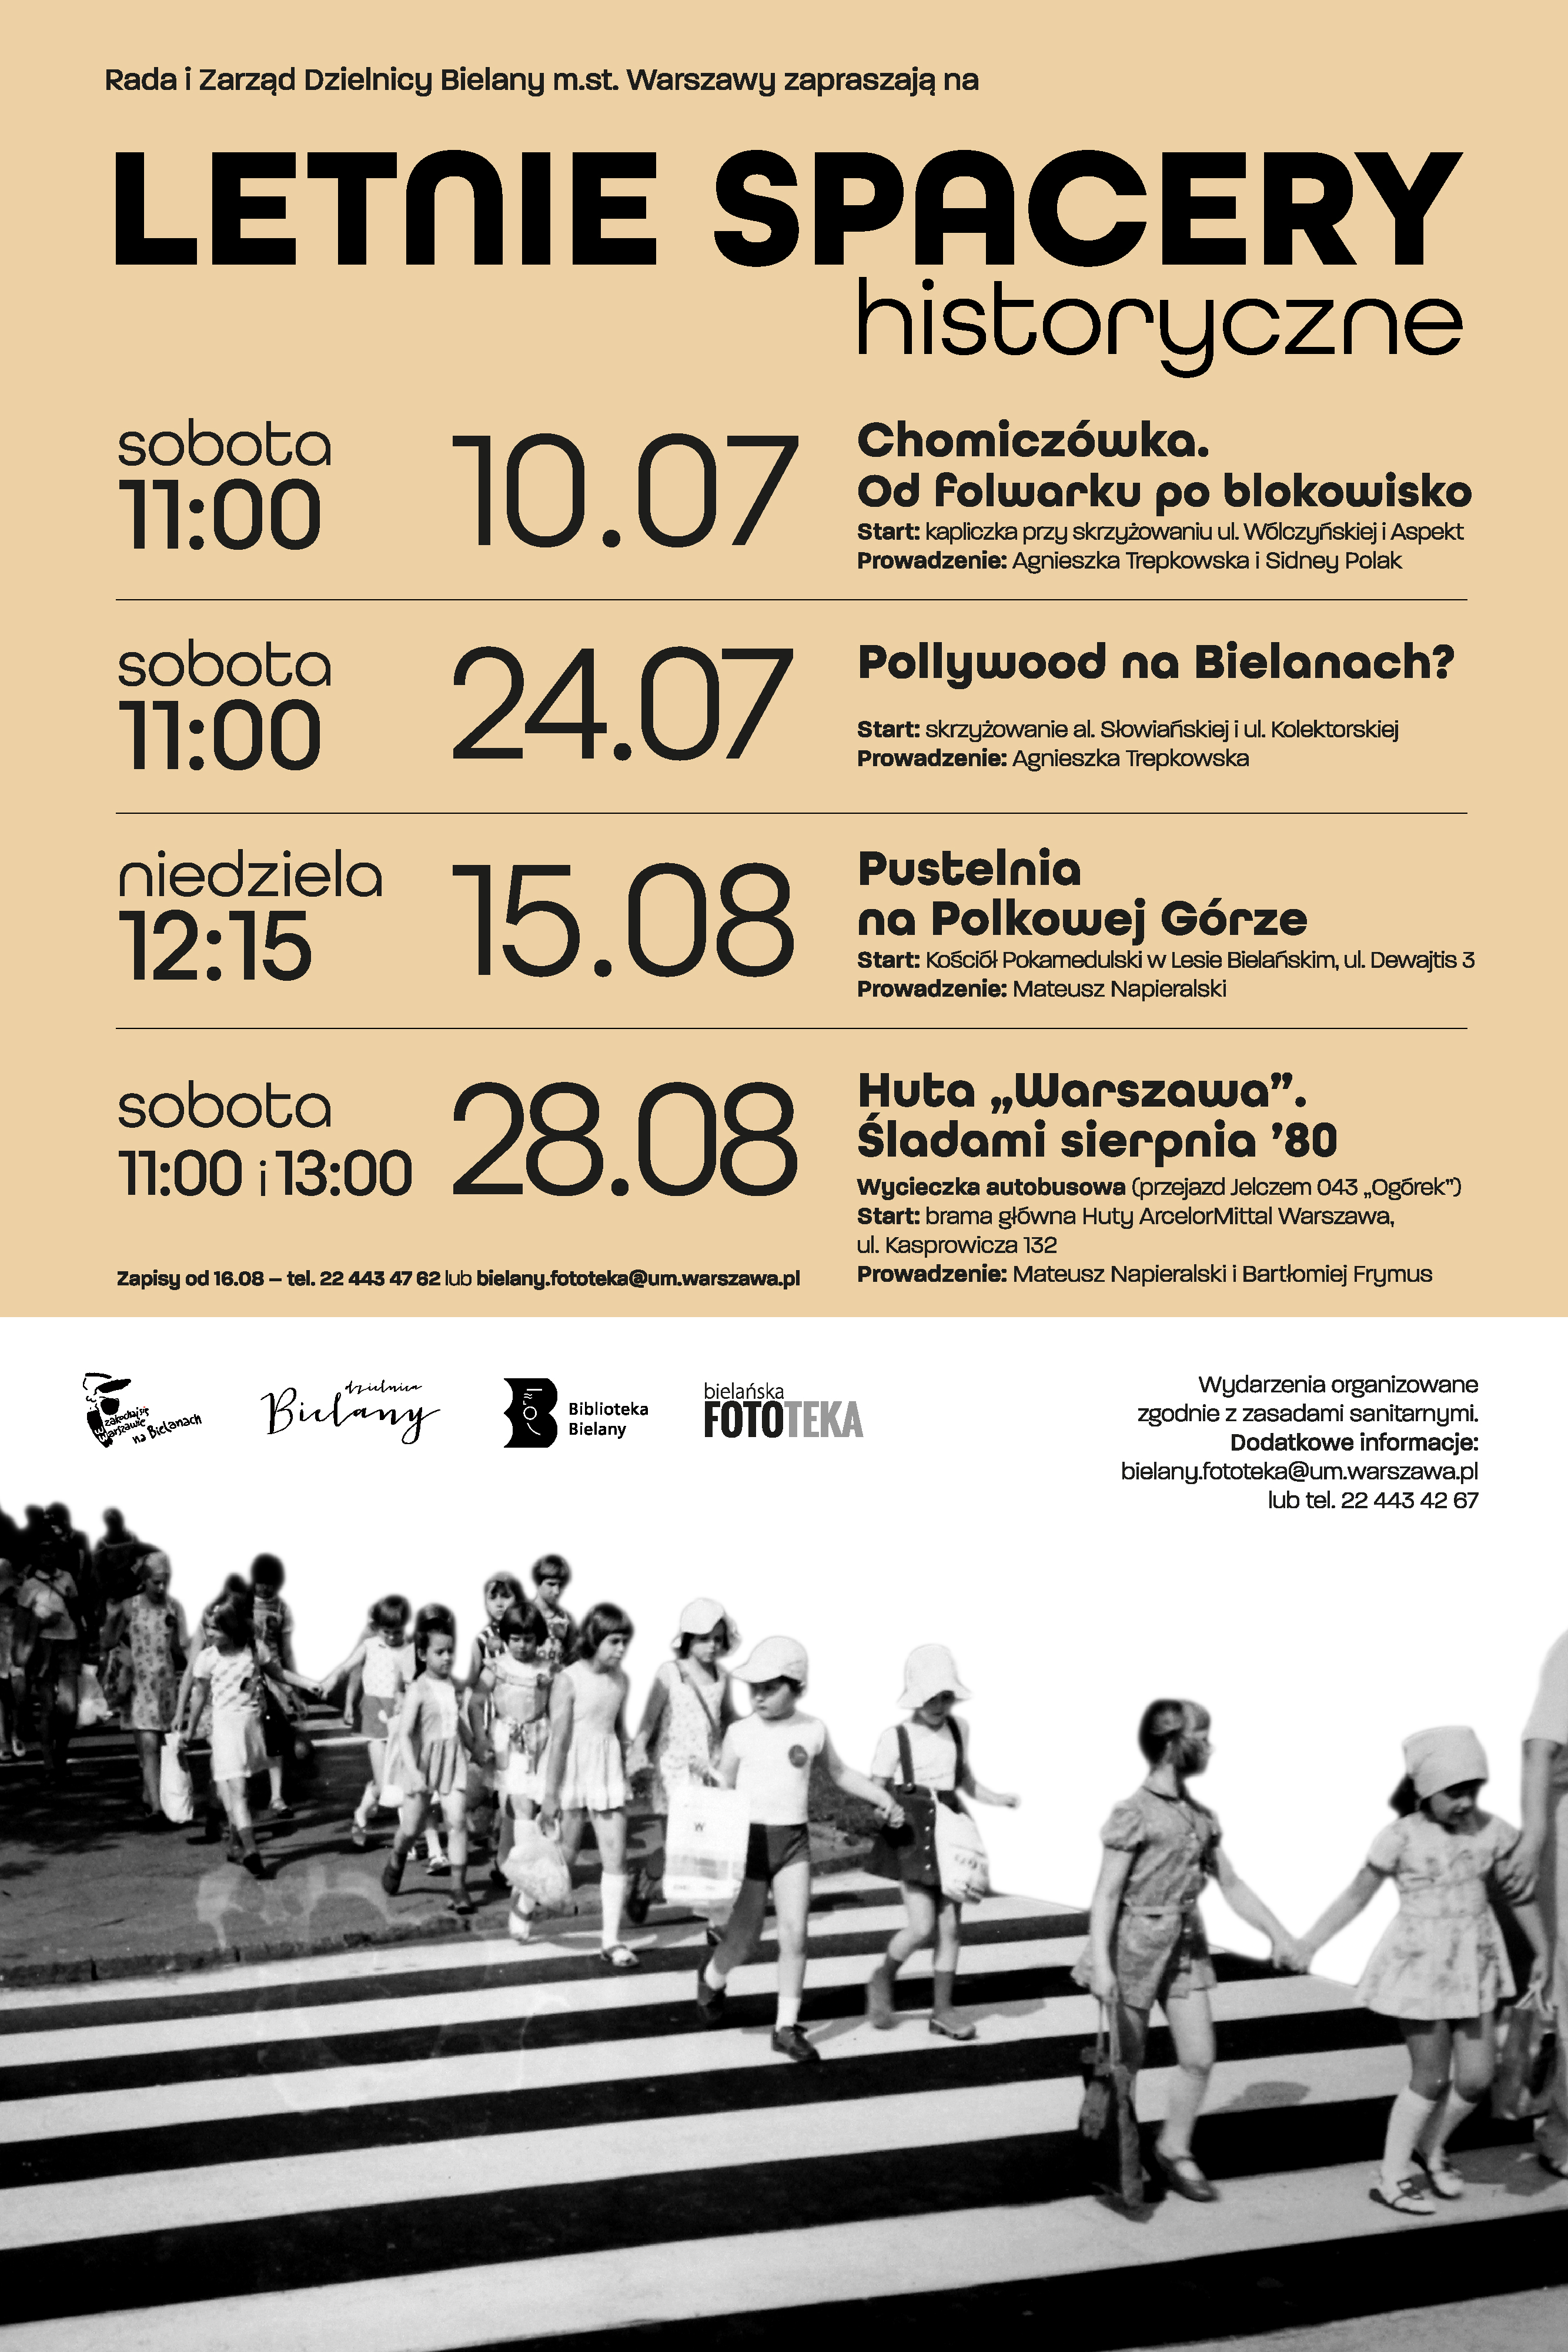 Plakat promujący letnie spacery historyczne z datami spacerów